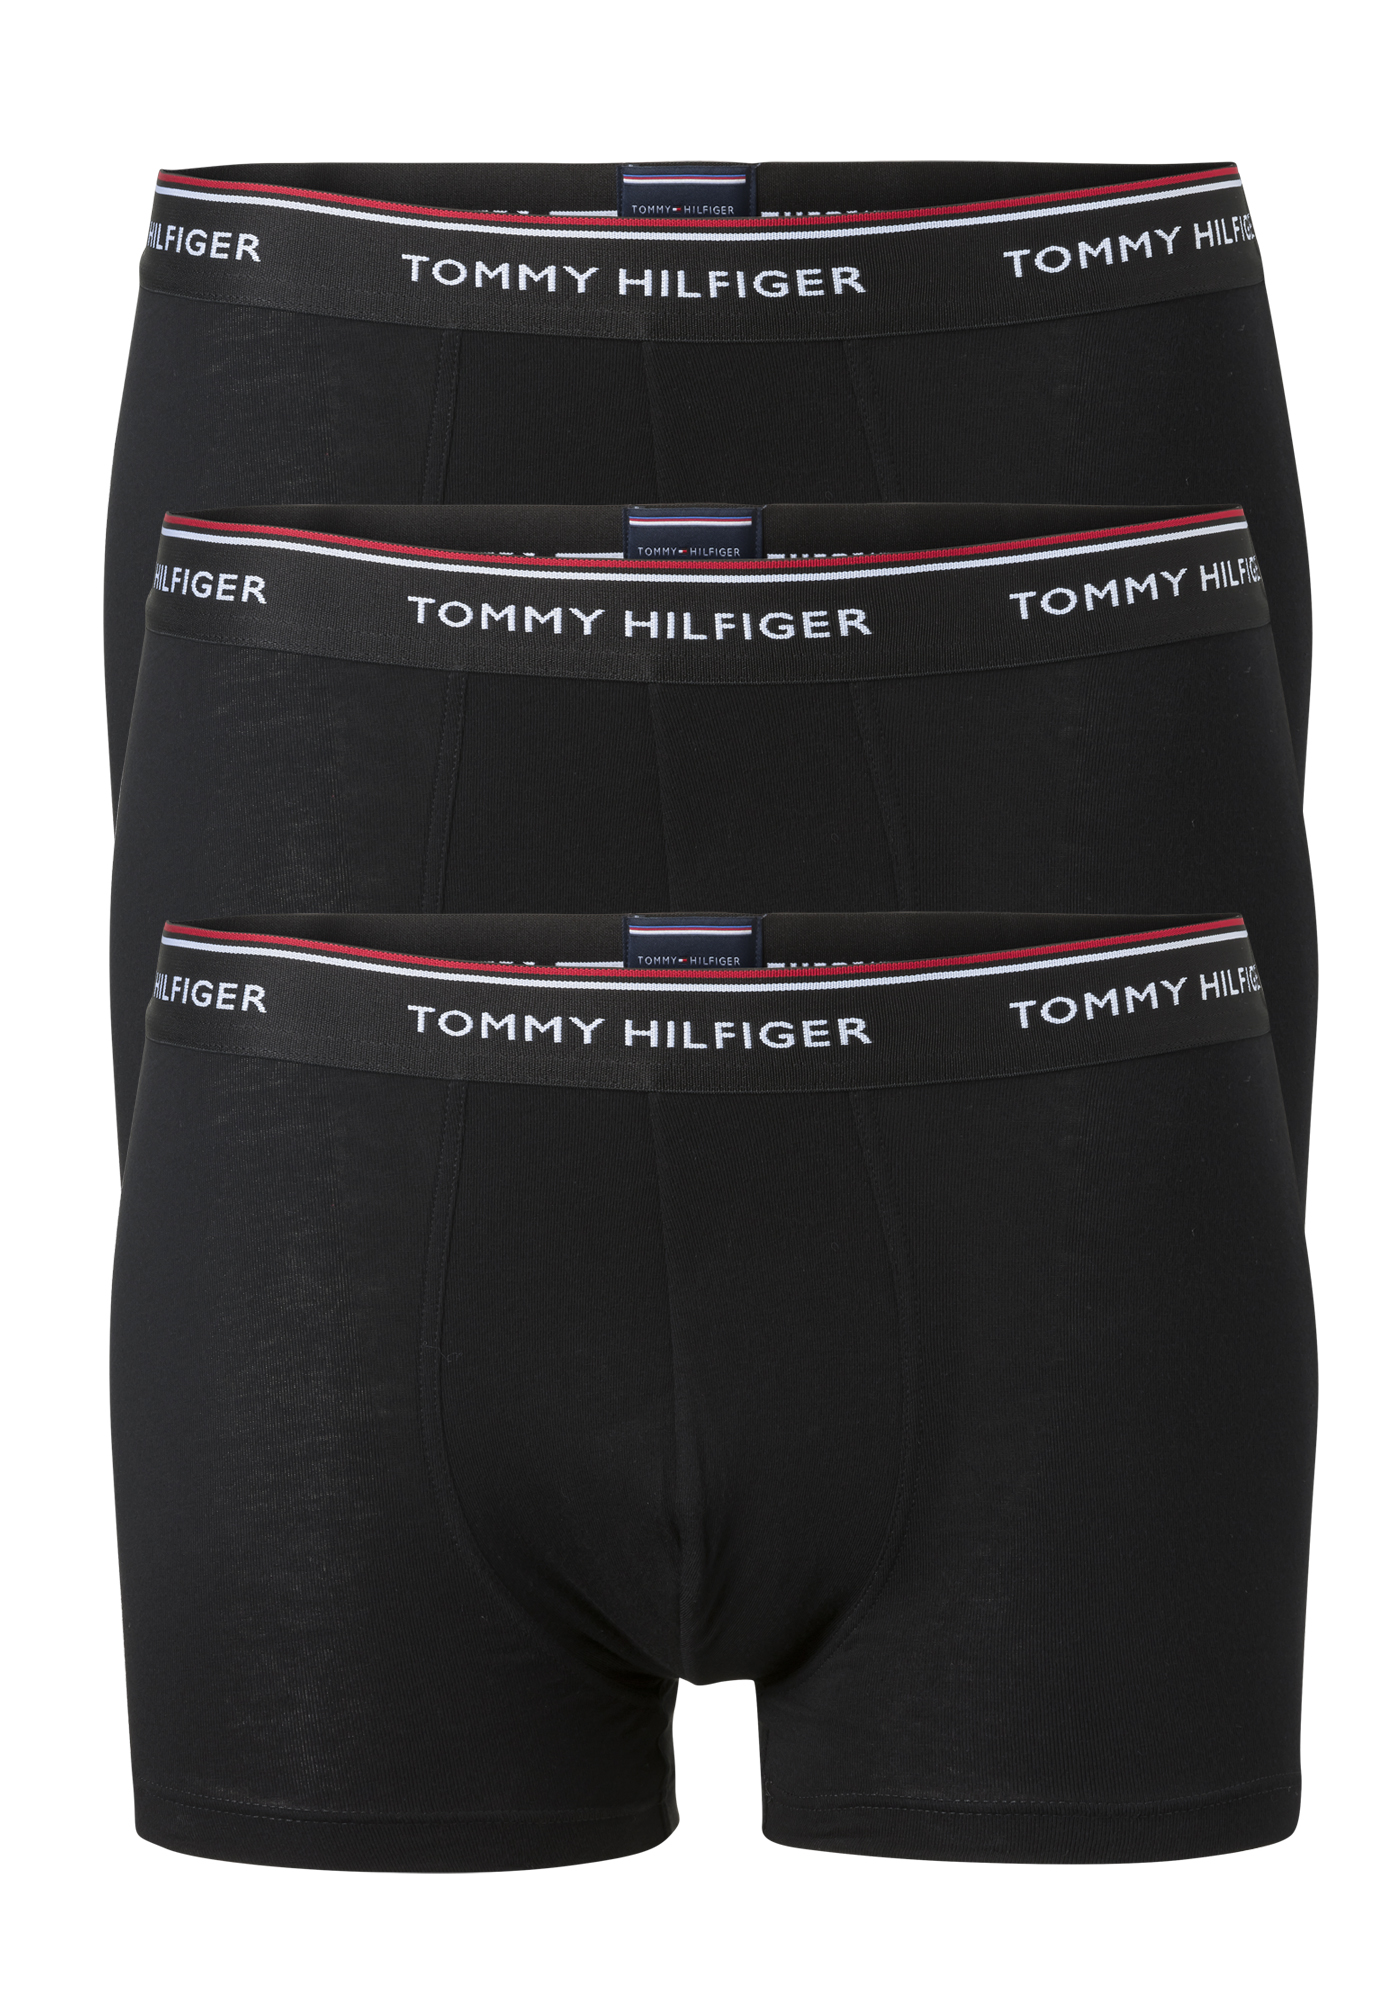 Specialiseren worst verantwoordelijkheid Tommy Hilfiger trunks (3-pack), heren boxers normale lengte, zwart - Zomer  SALE tot 50% korting